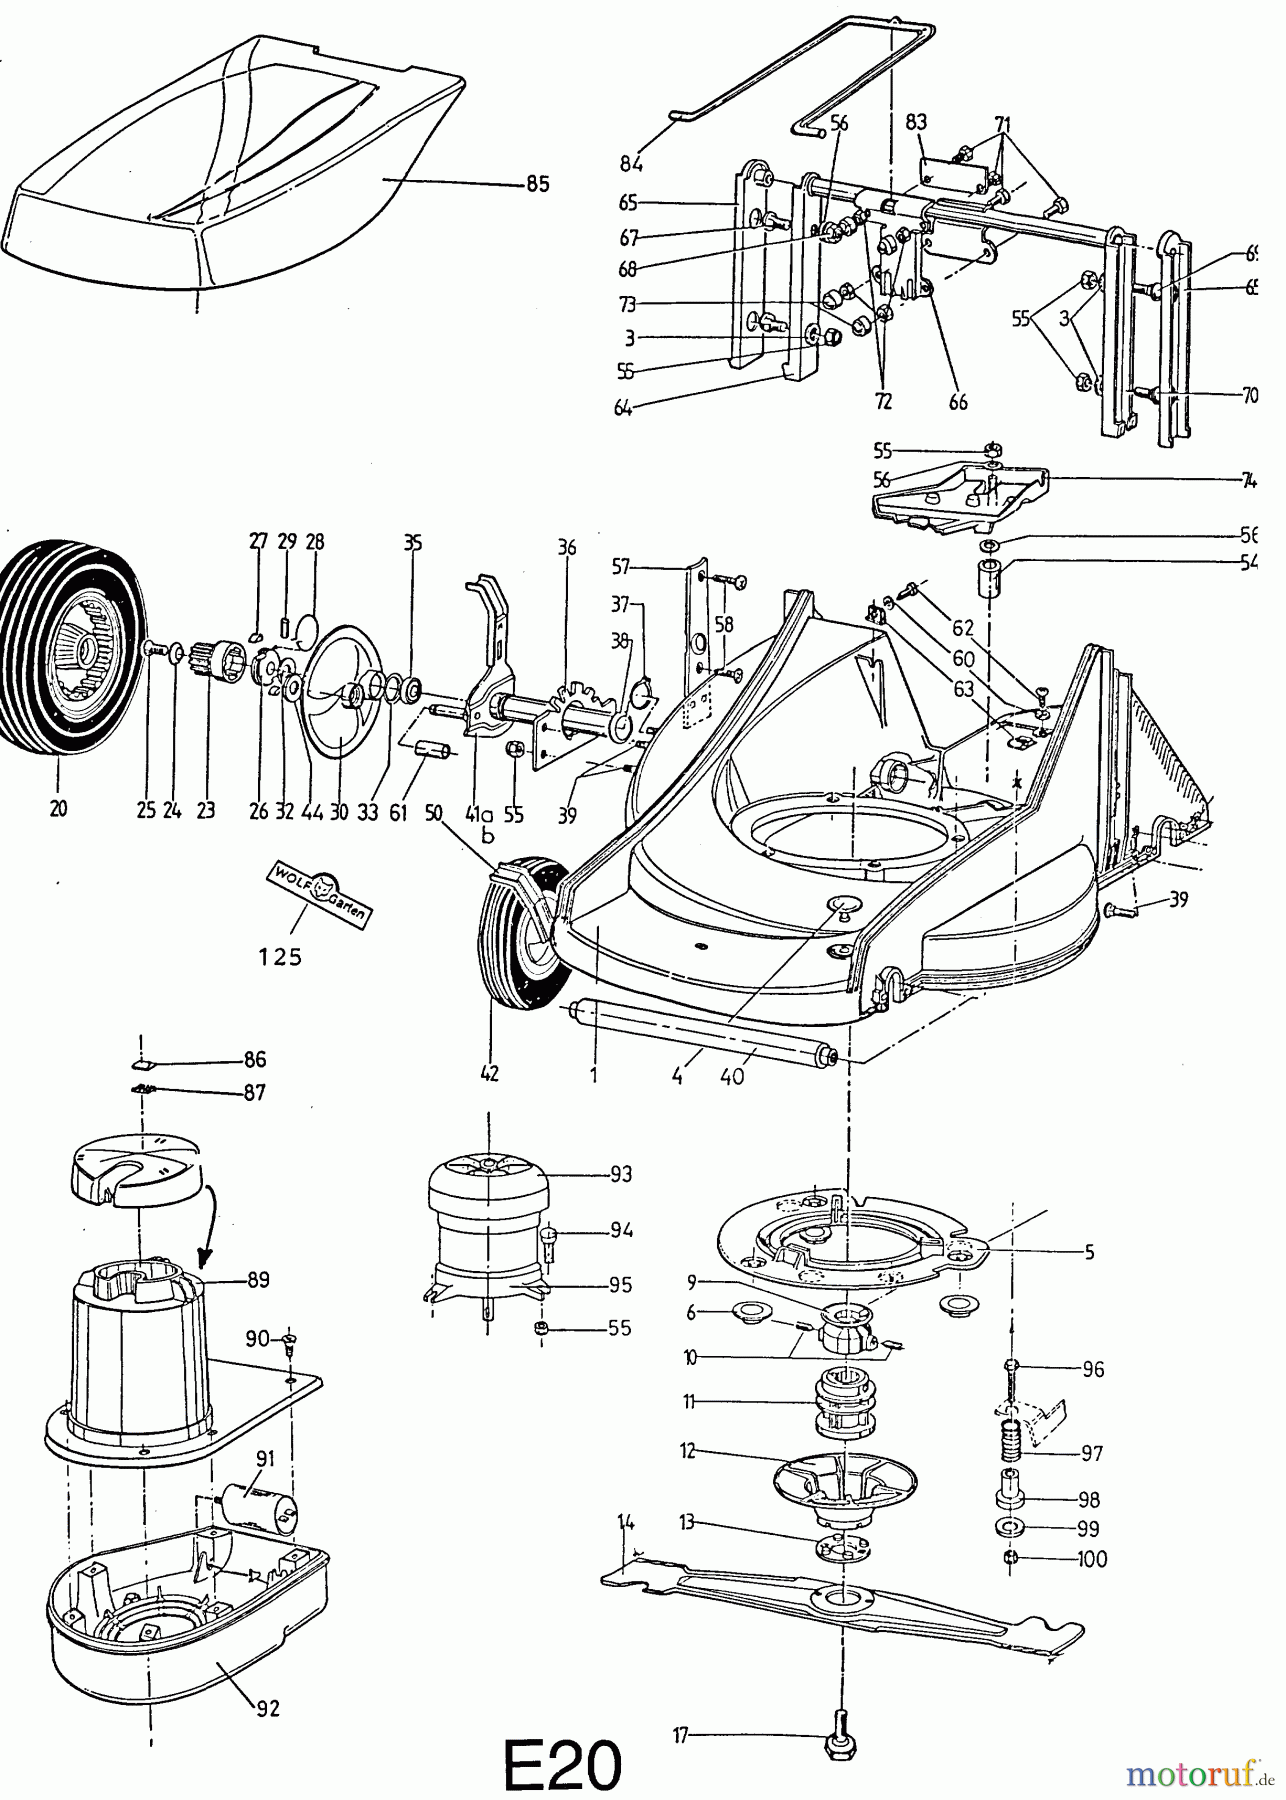  Wolf-Garten Elektromäher mit Antrieb 4.46 EA 6902000 Serie A  (1996) Mähwerksgehäuse, Messer, Messeraufnahme